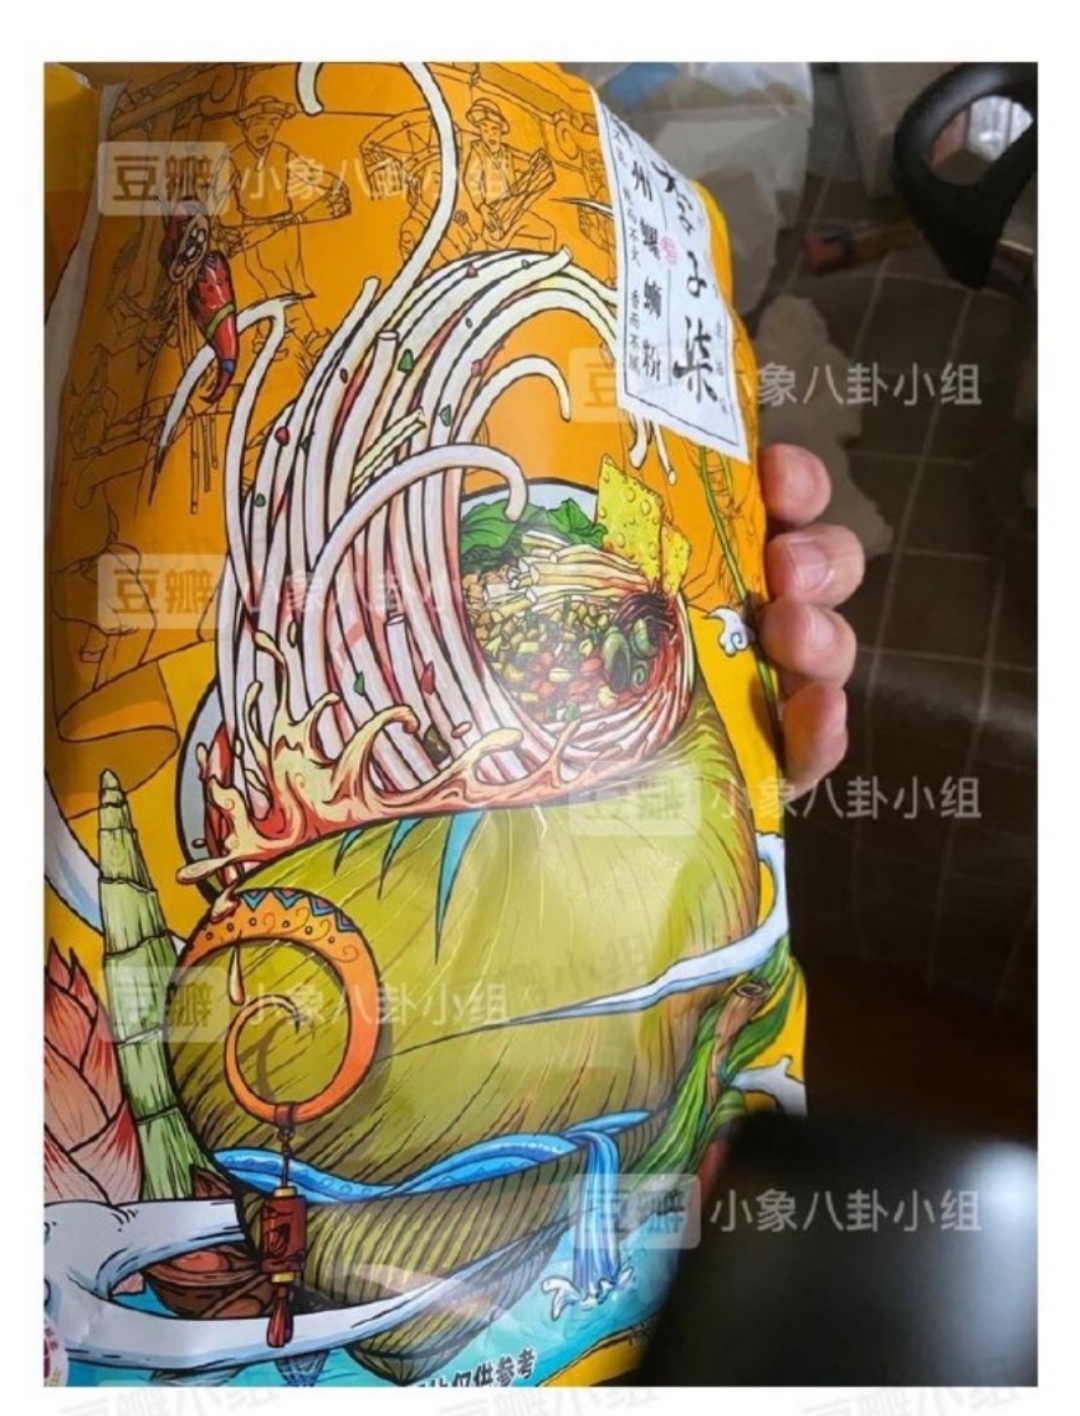 网友发出的螺蛳粉包装图片，包装上载有“李子柒”字样